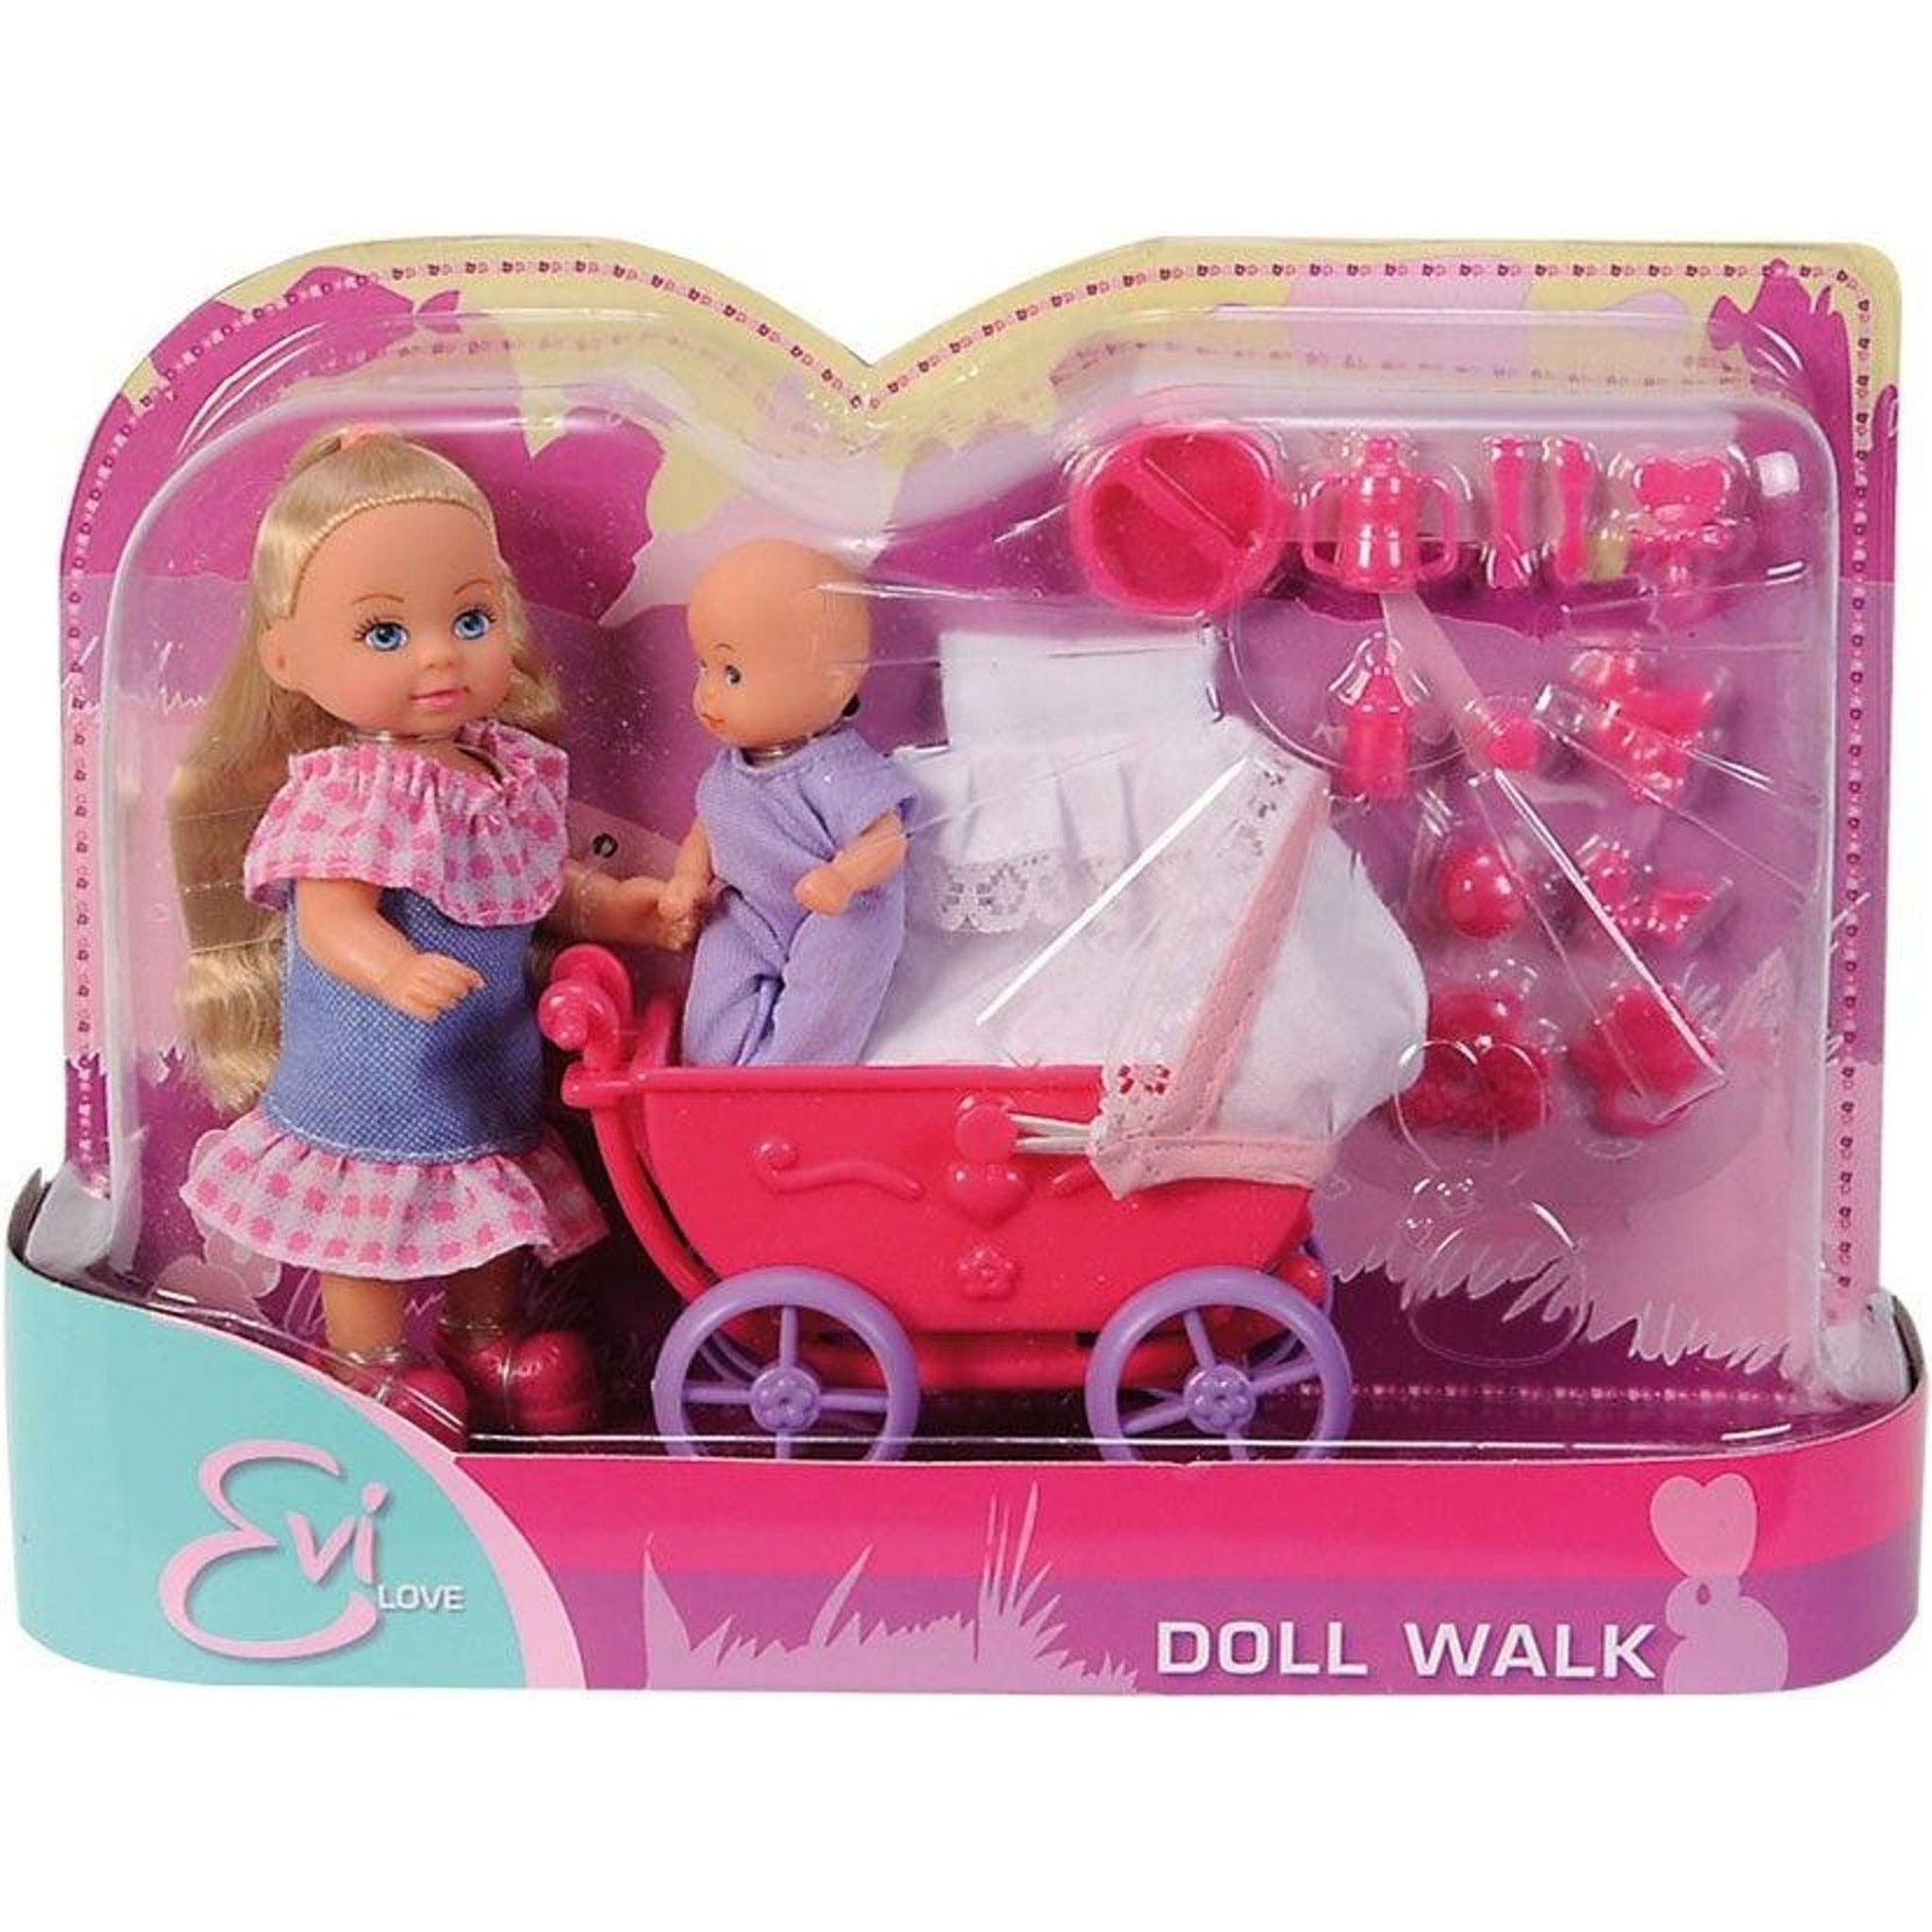 Evi Love Doll Walk - Toybox Tales